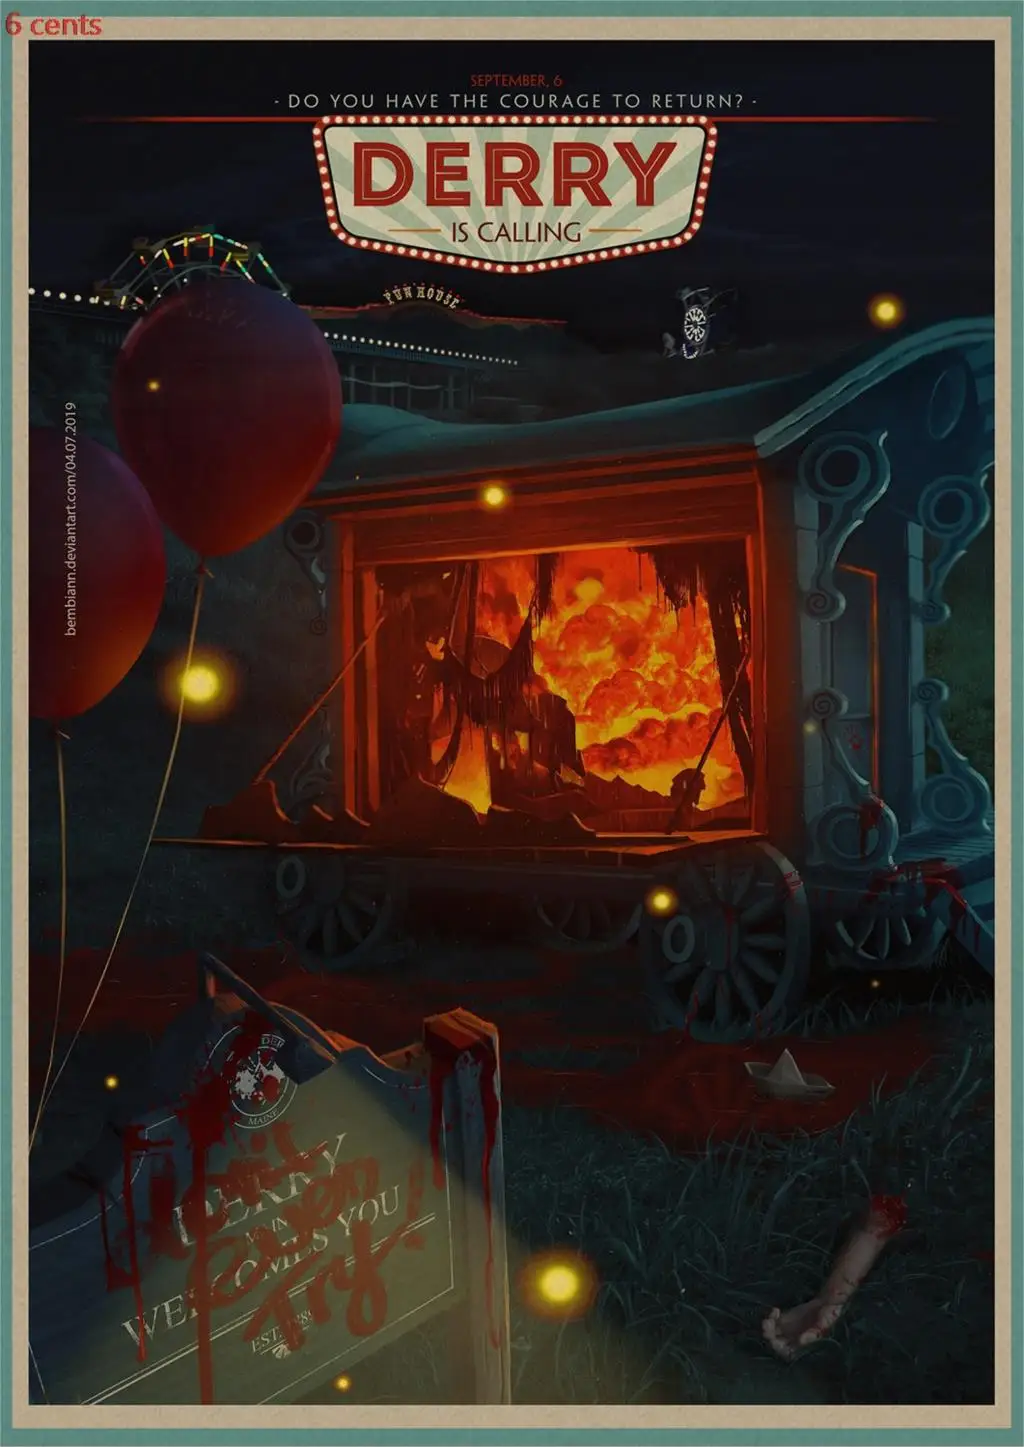 Ужас фильм глава два плакат на крафт-бумаге карты украшения ретро-постер к фильму постер декоративная стена Стикеры